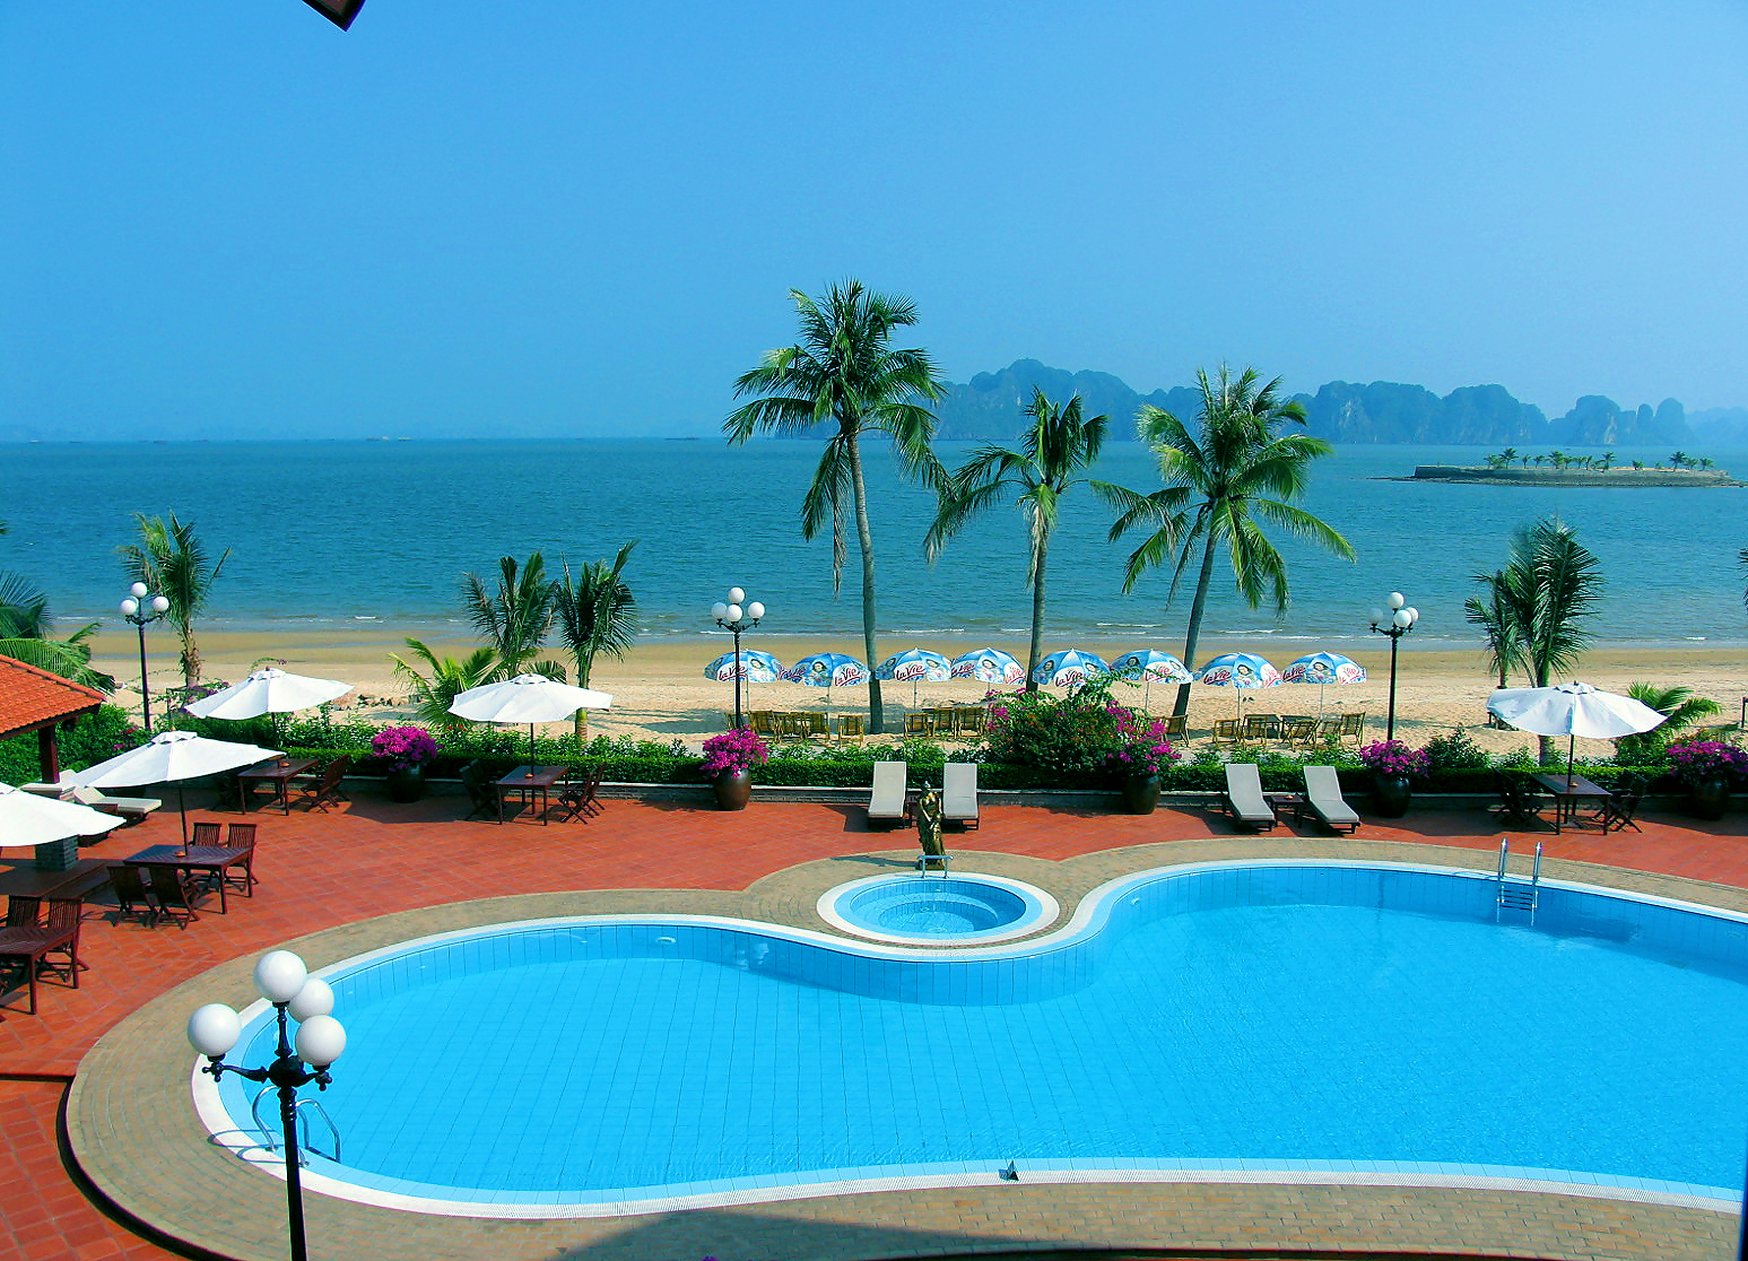 Foto af Tuan Chau Resort beach med høj niveau af renlighed